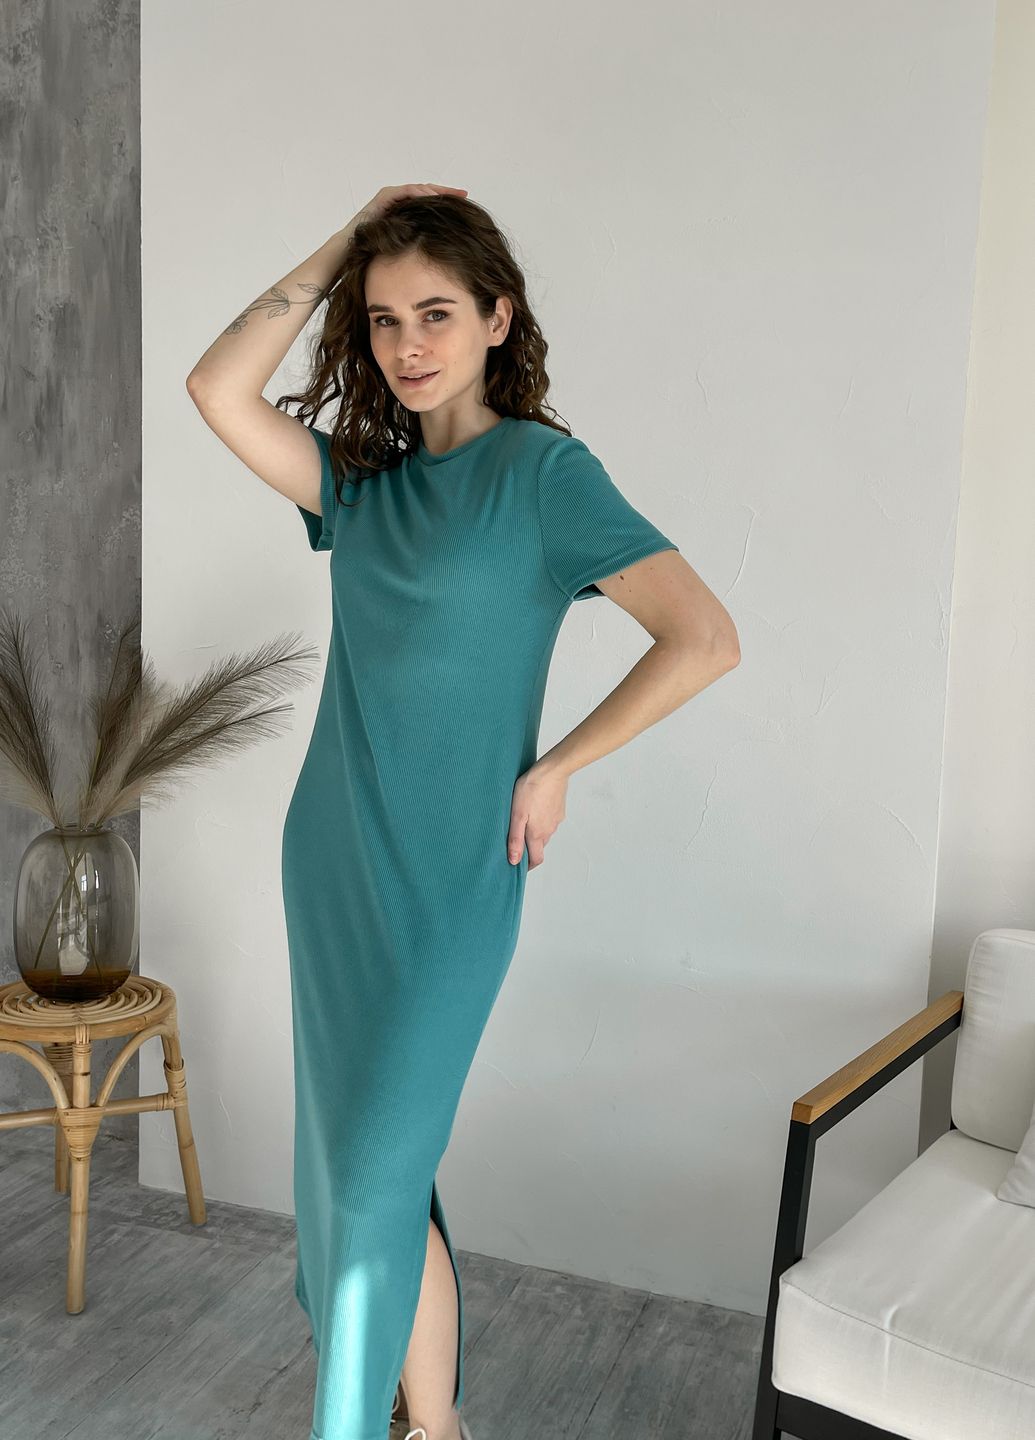 Купить Длинное платье-футболка в рубчик бирюзовое Merlini Кассо 700000125 размер 42-44 (S-M) в интернет-магазине